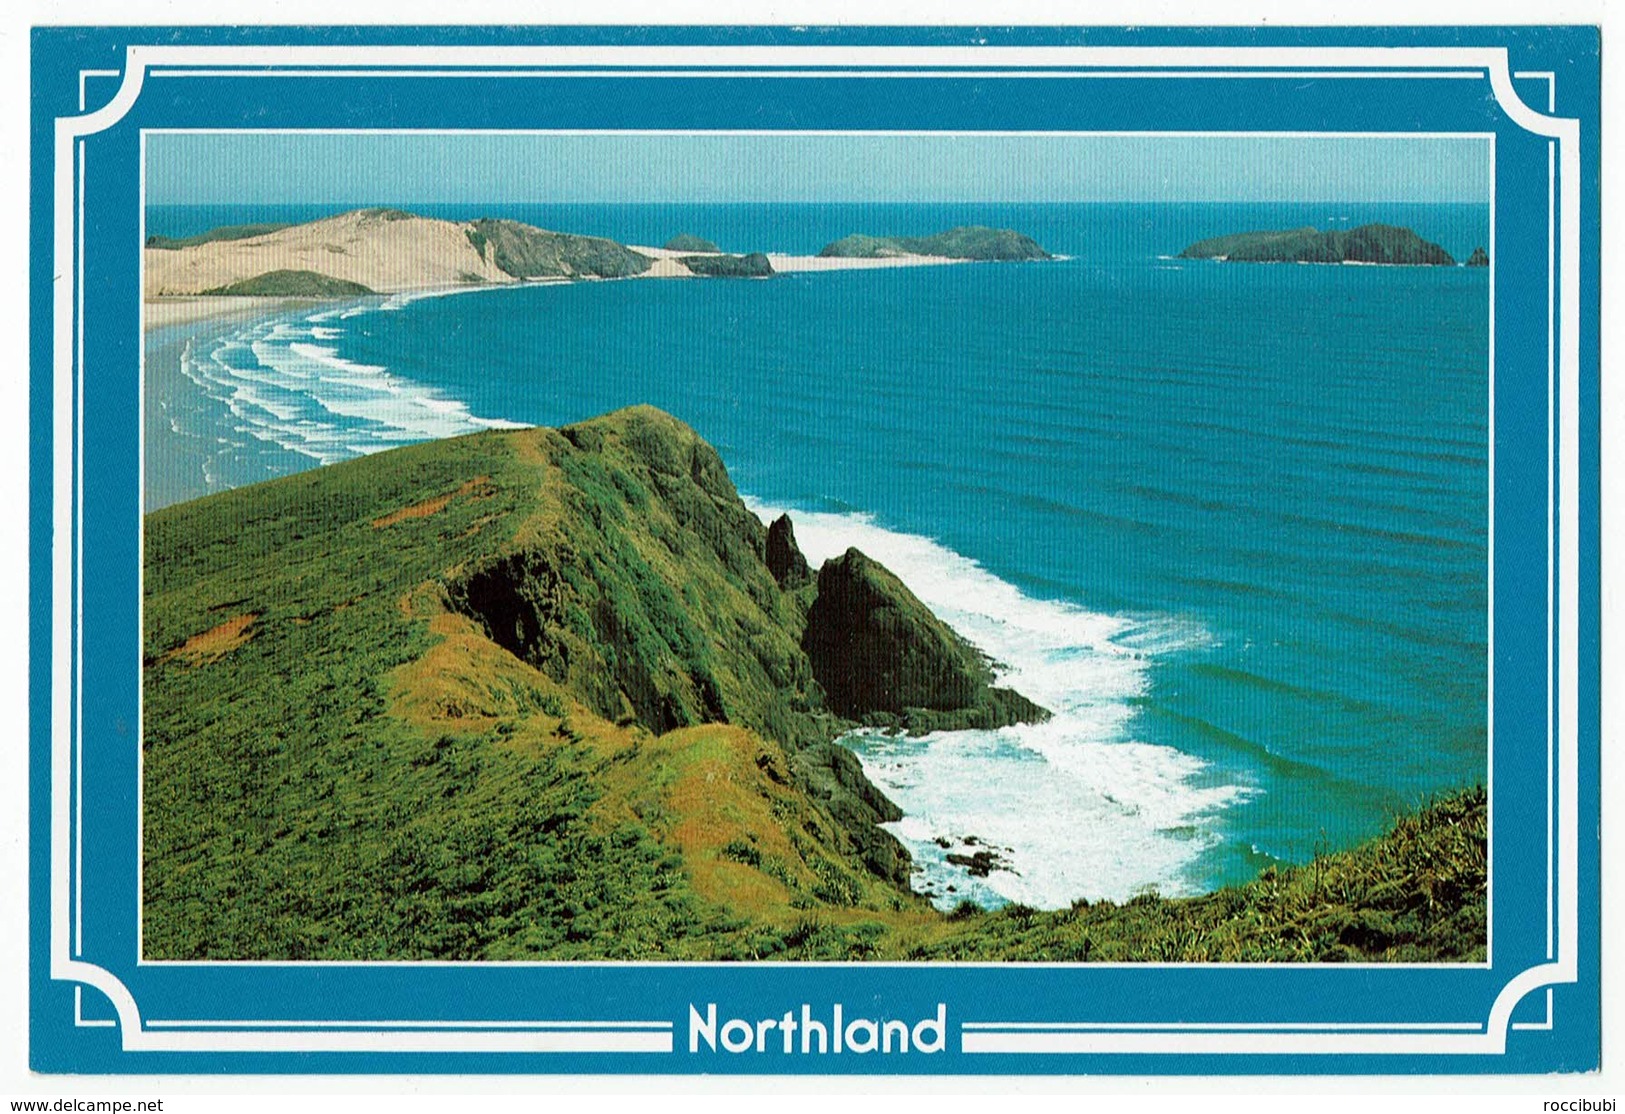 Neuseeland, New Zealand, Northland - Nieuw-Zeeland